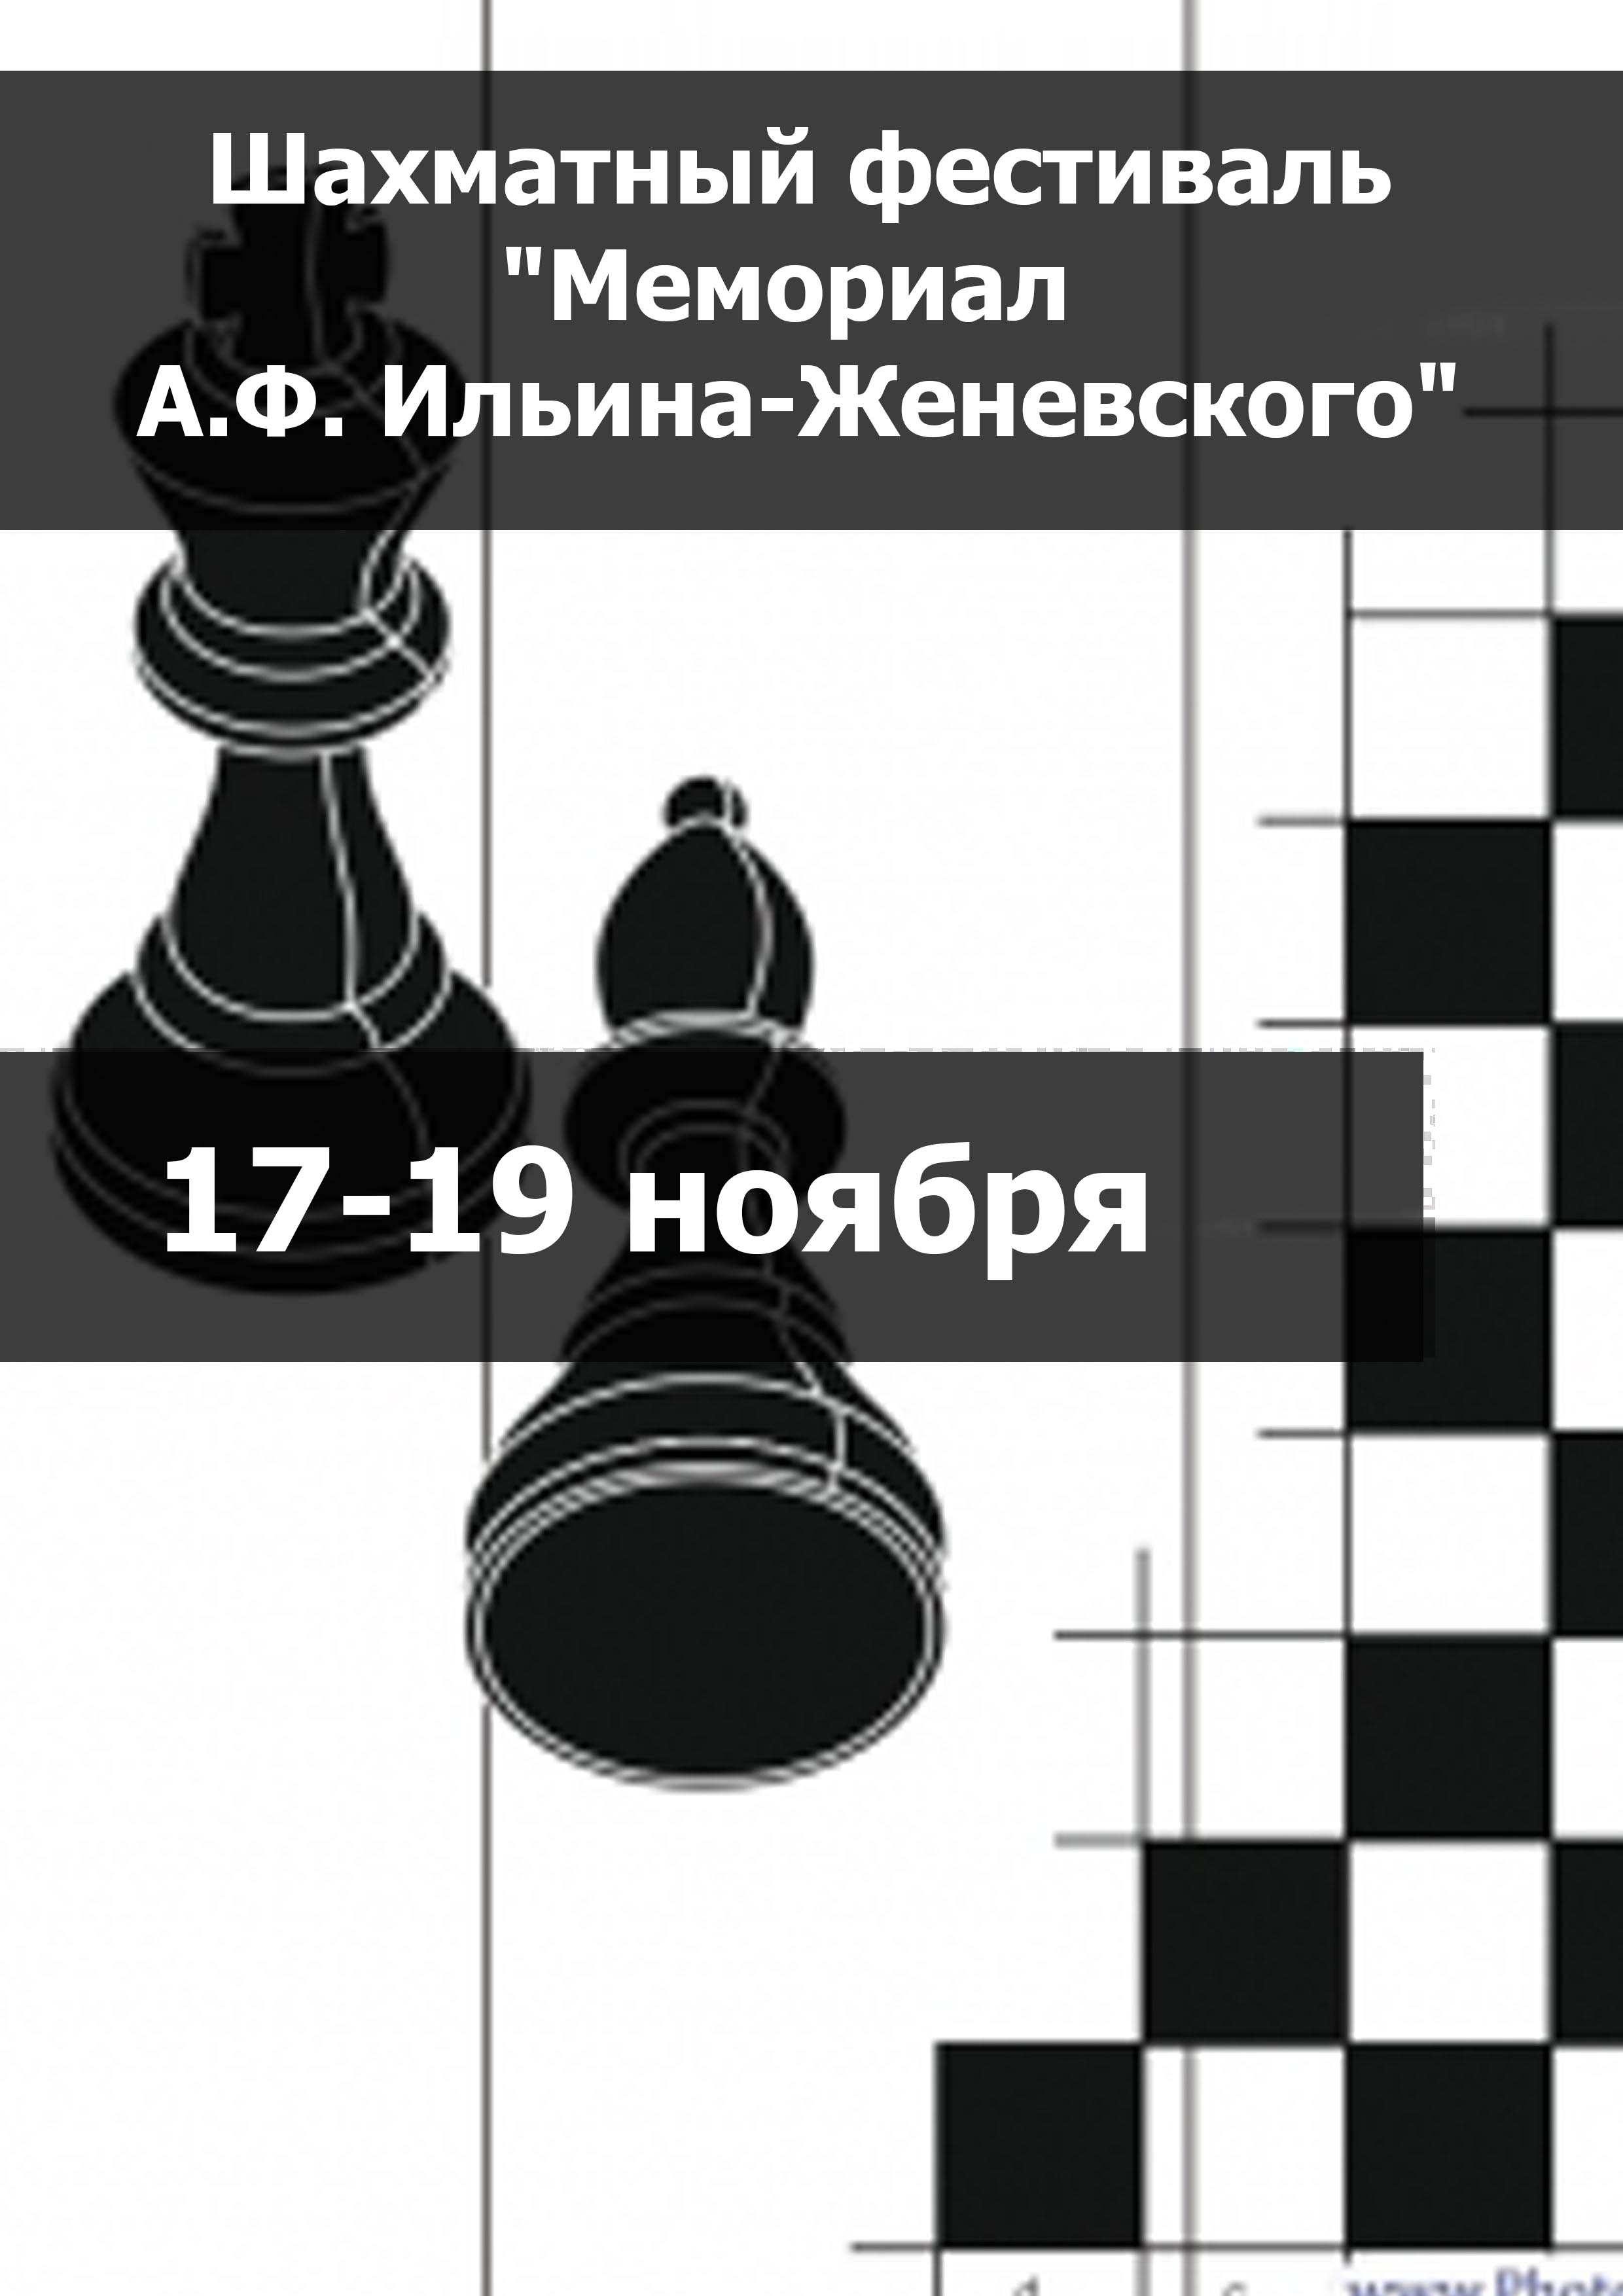 Шахматный фестиваль "Мемориал А.Ф. Ильина-Женевского" 17  নভেম্বর এর
 2023  বছর
 